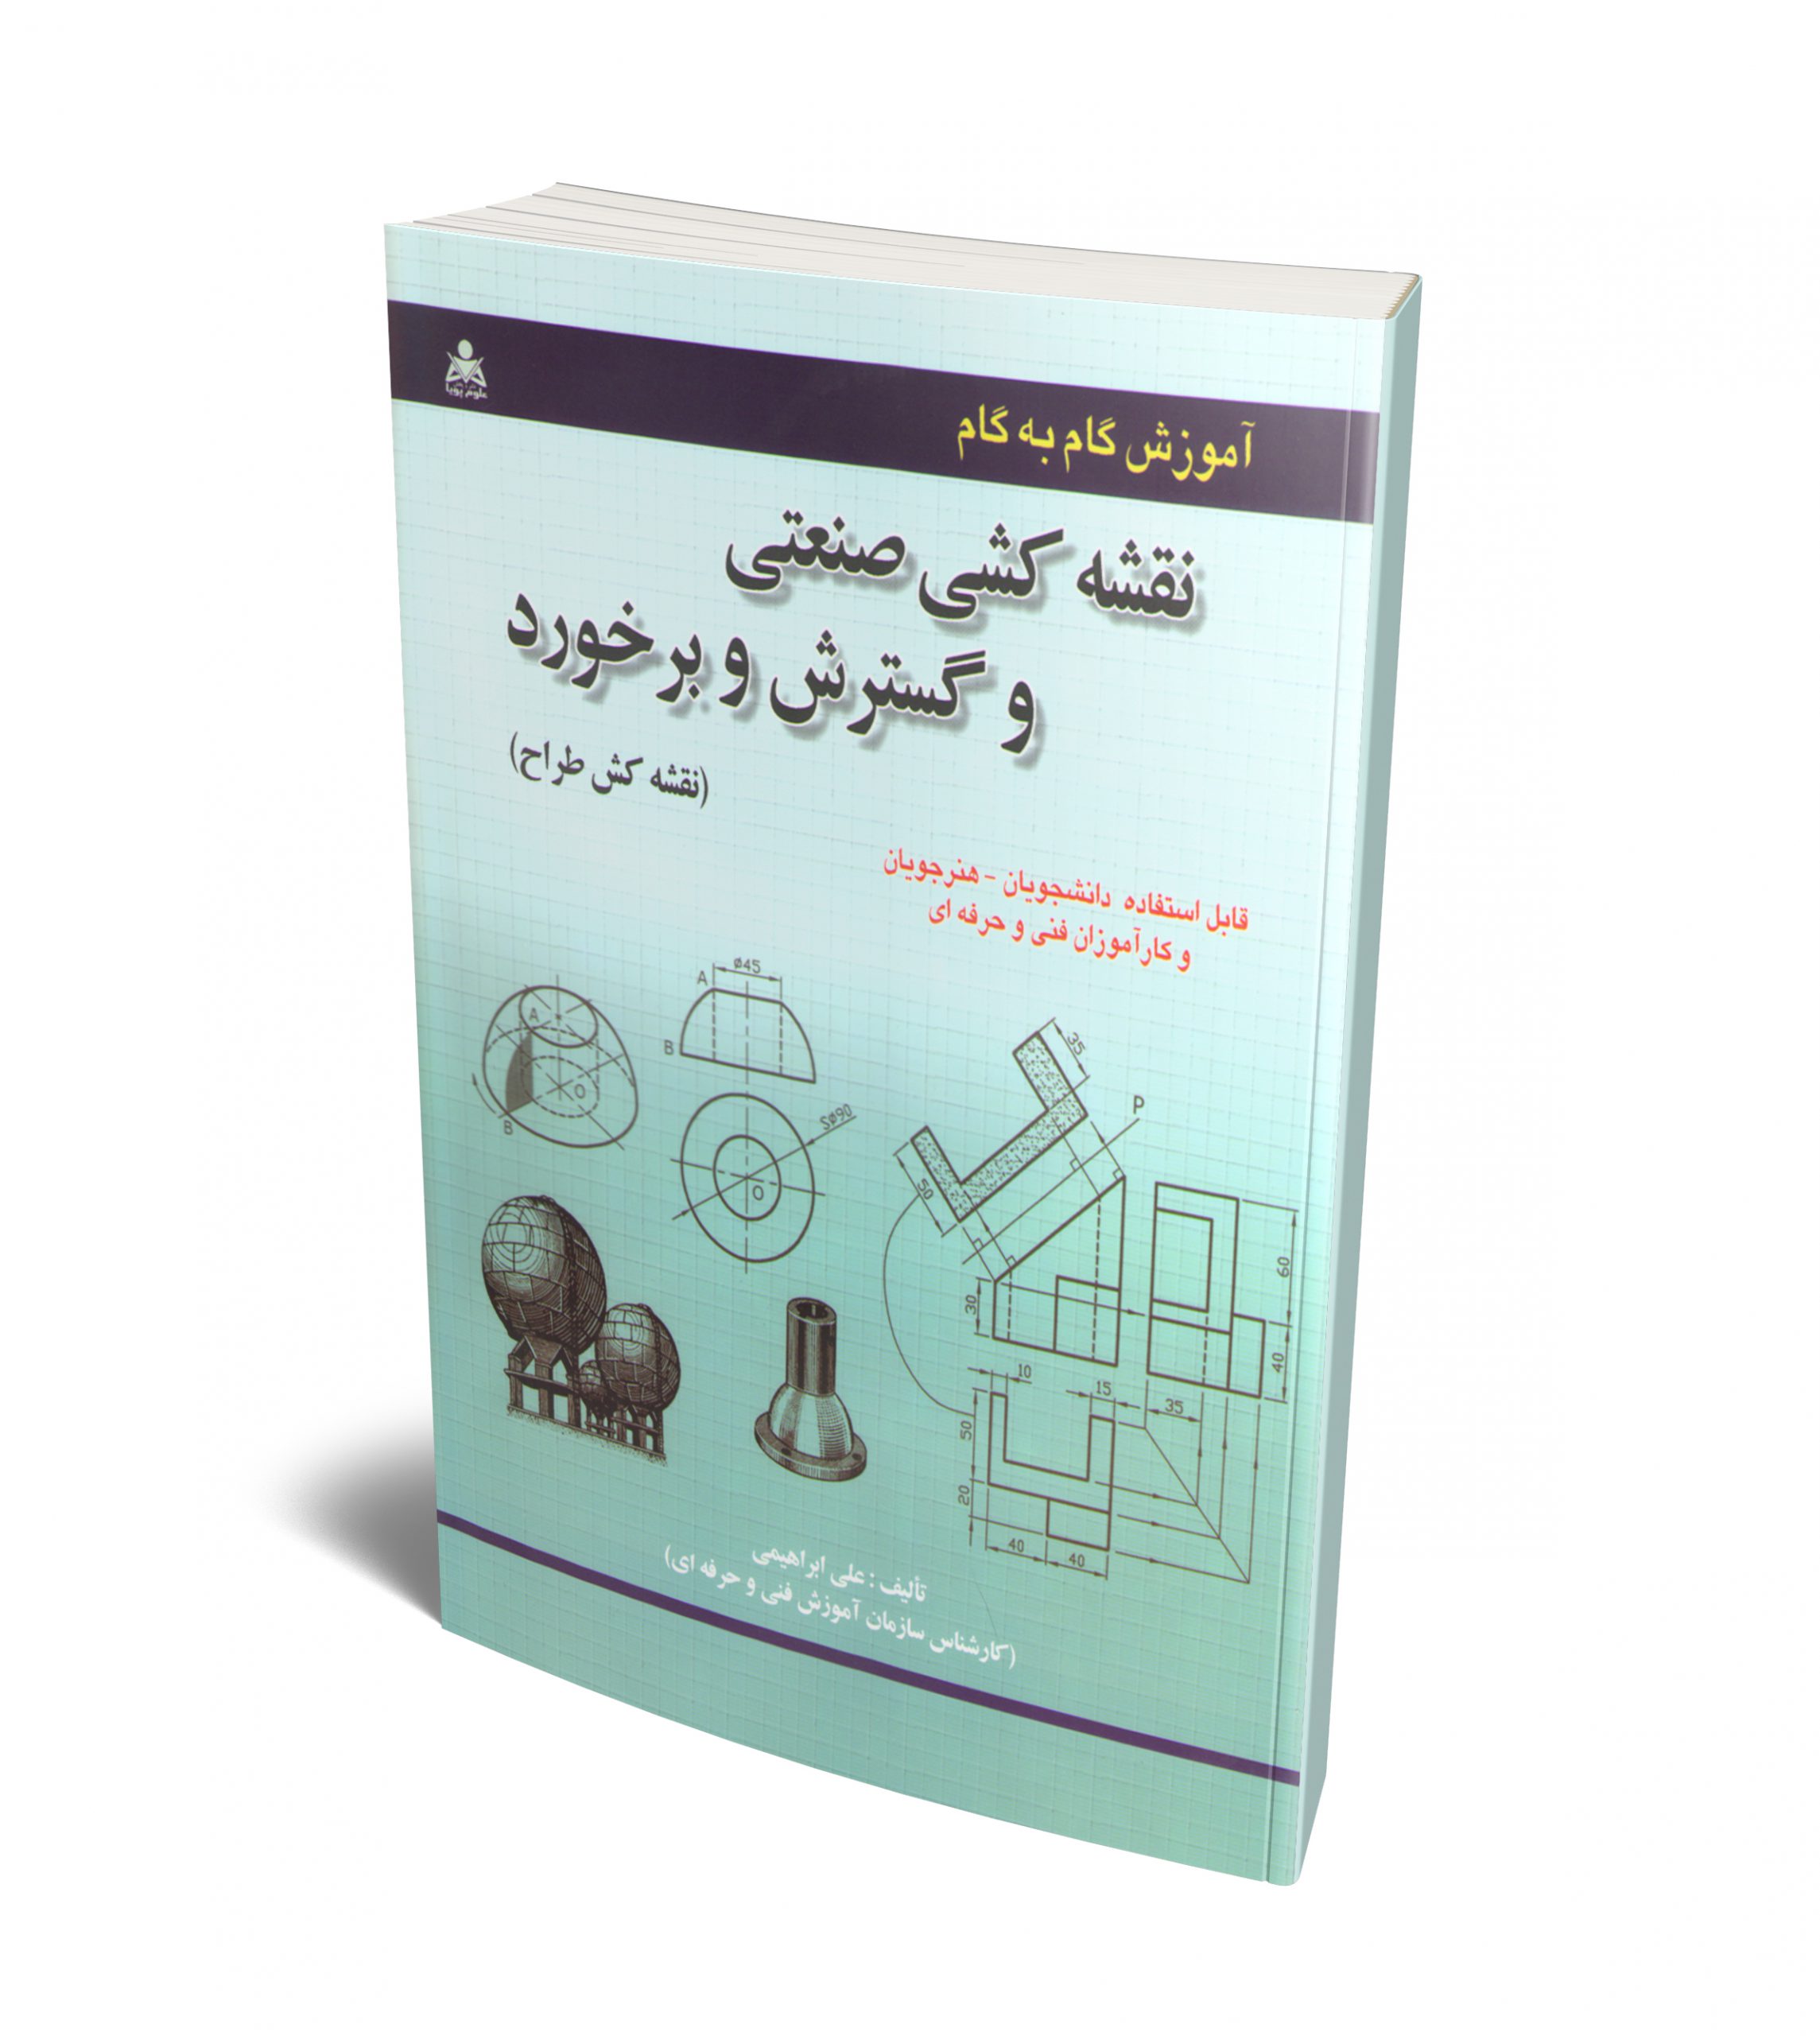 آموزش گام به گام نقشه کشی صنعتی و گسترش و برخورد نویسنده علی ابراهیمی